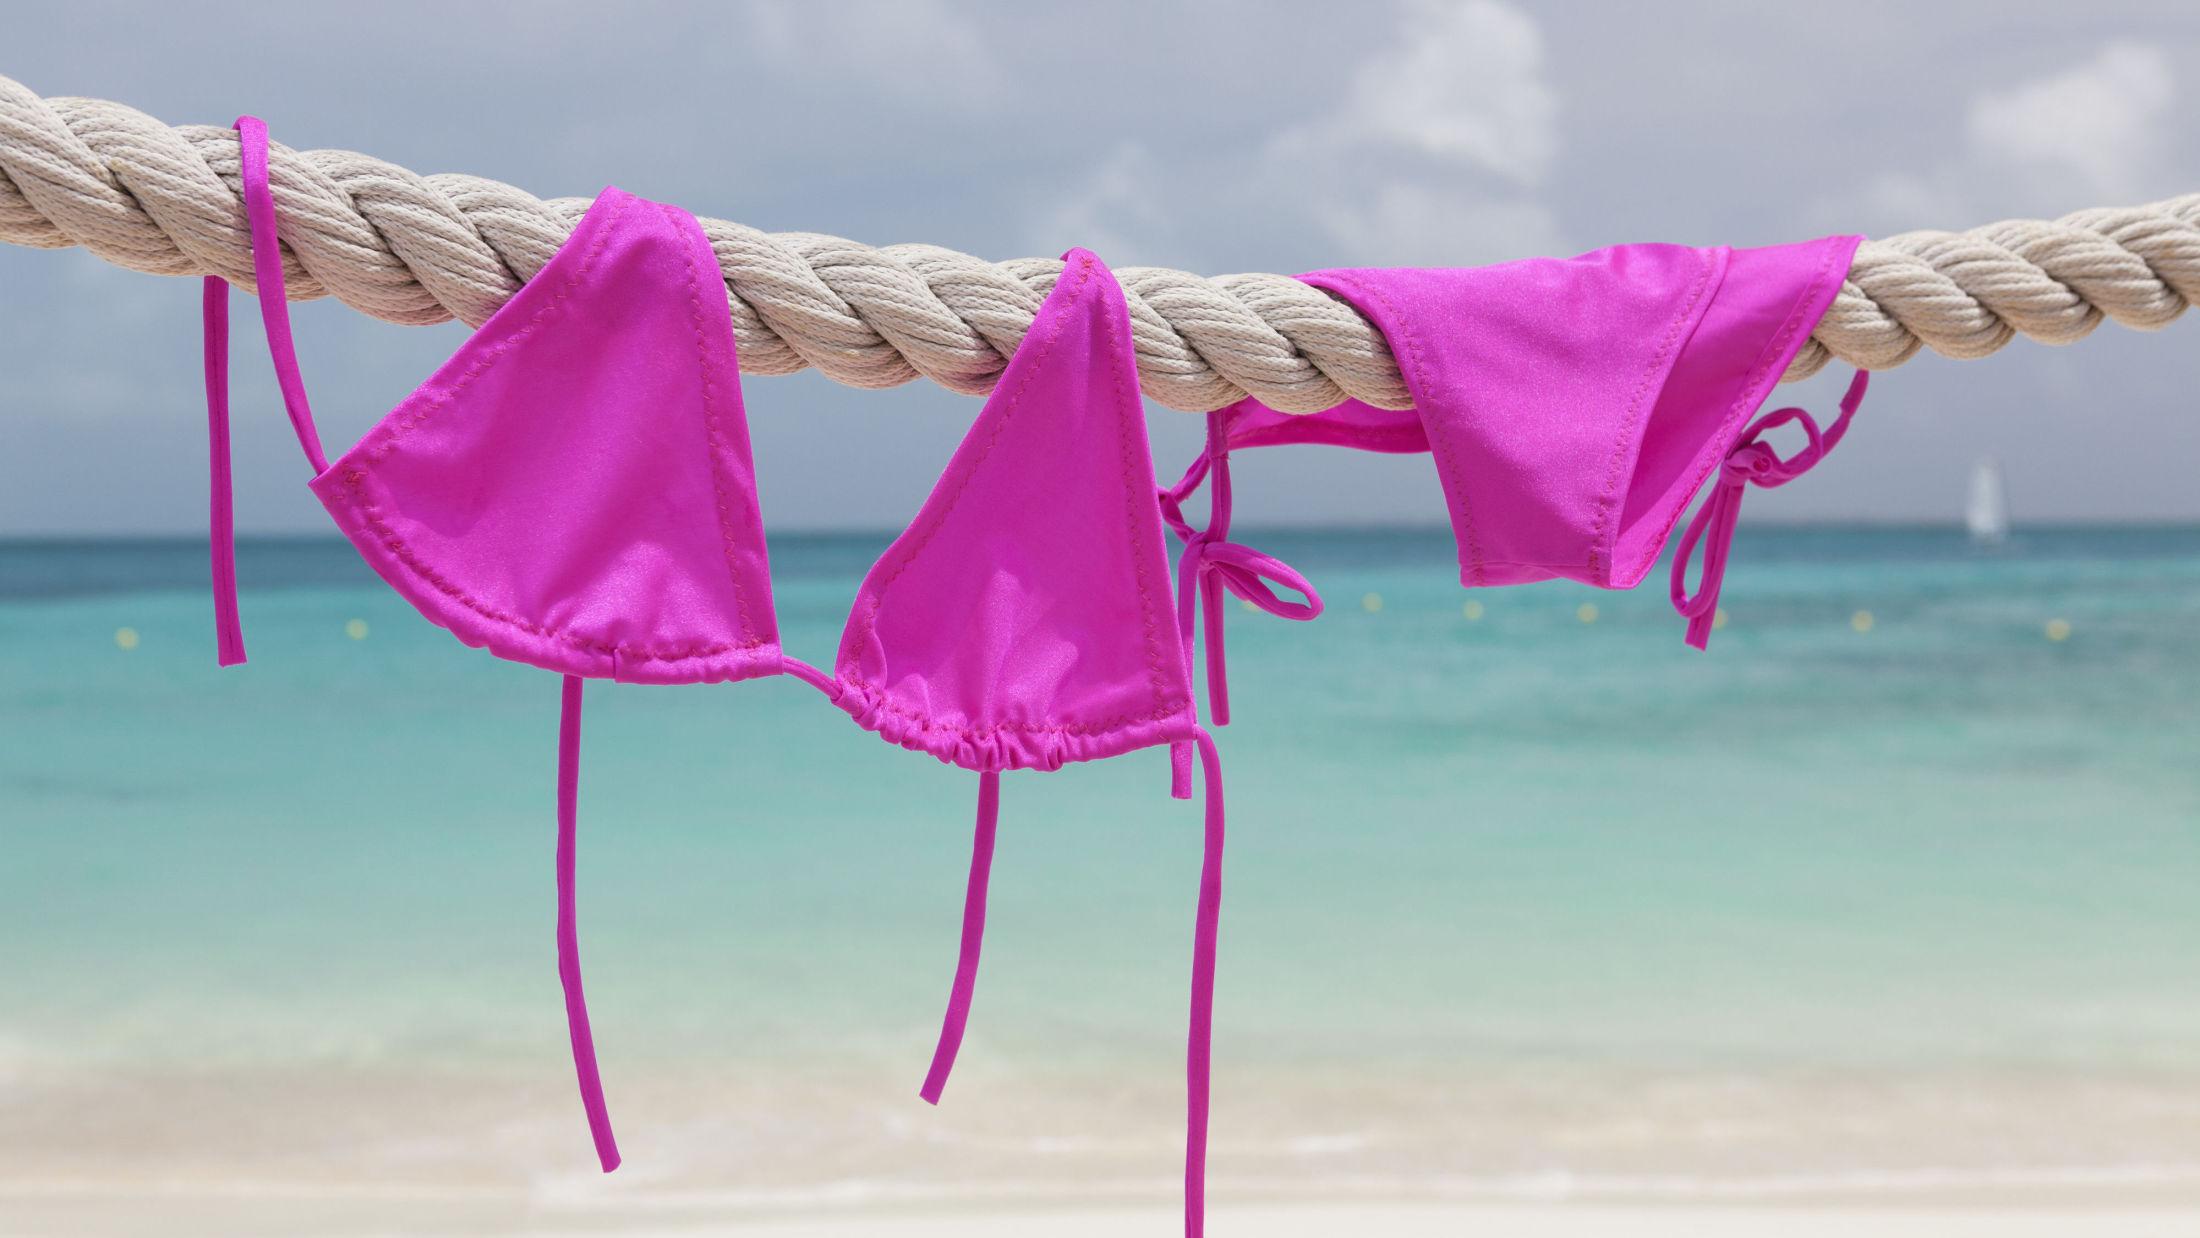 SKYLL & TØRK: Skyll alltid bikinien din i kaldt ferskvann etter en dag på stranden eller ved bassenget. La den tørke i skyggen for å unngå misfargning, tipser bikiniekspert. Foto: Getty Images